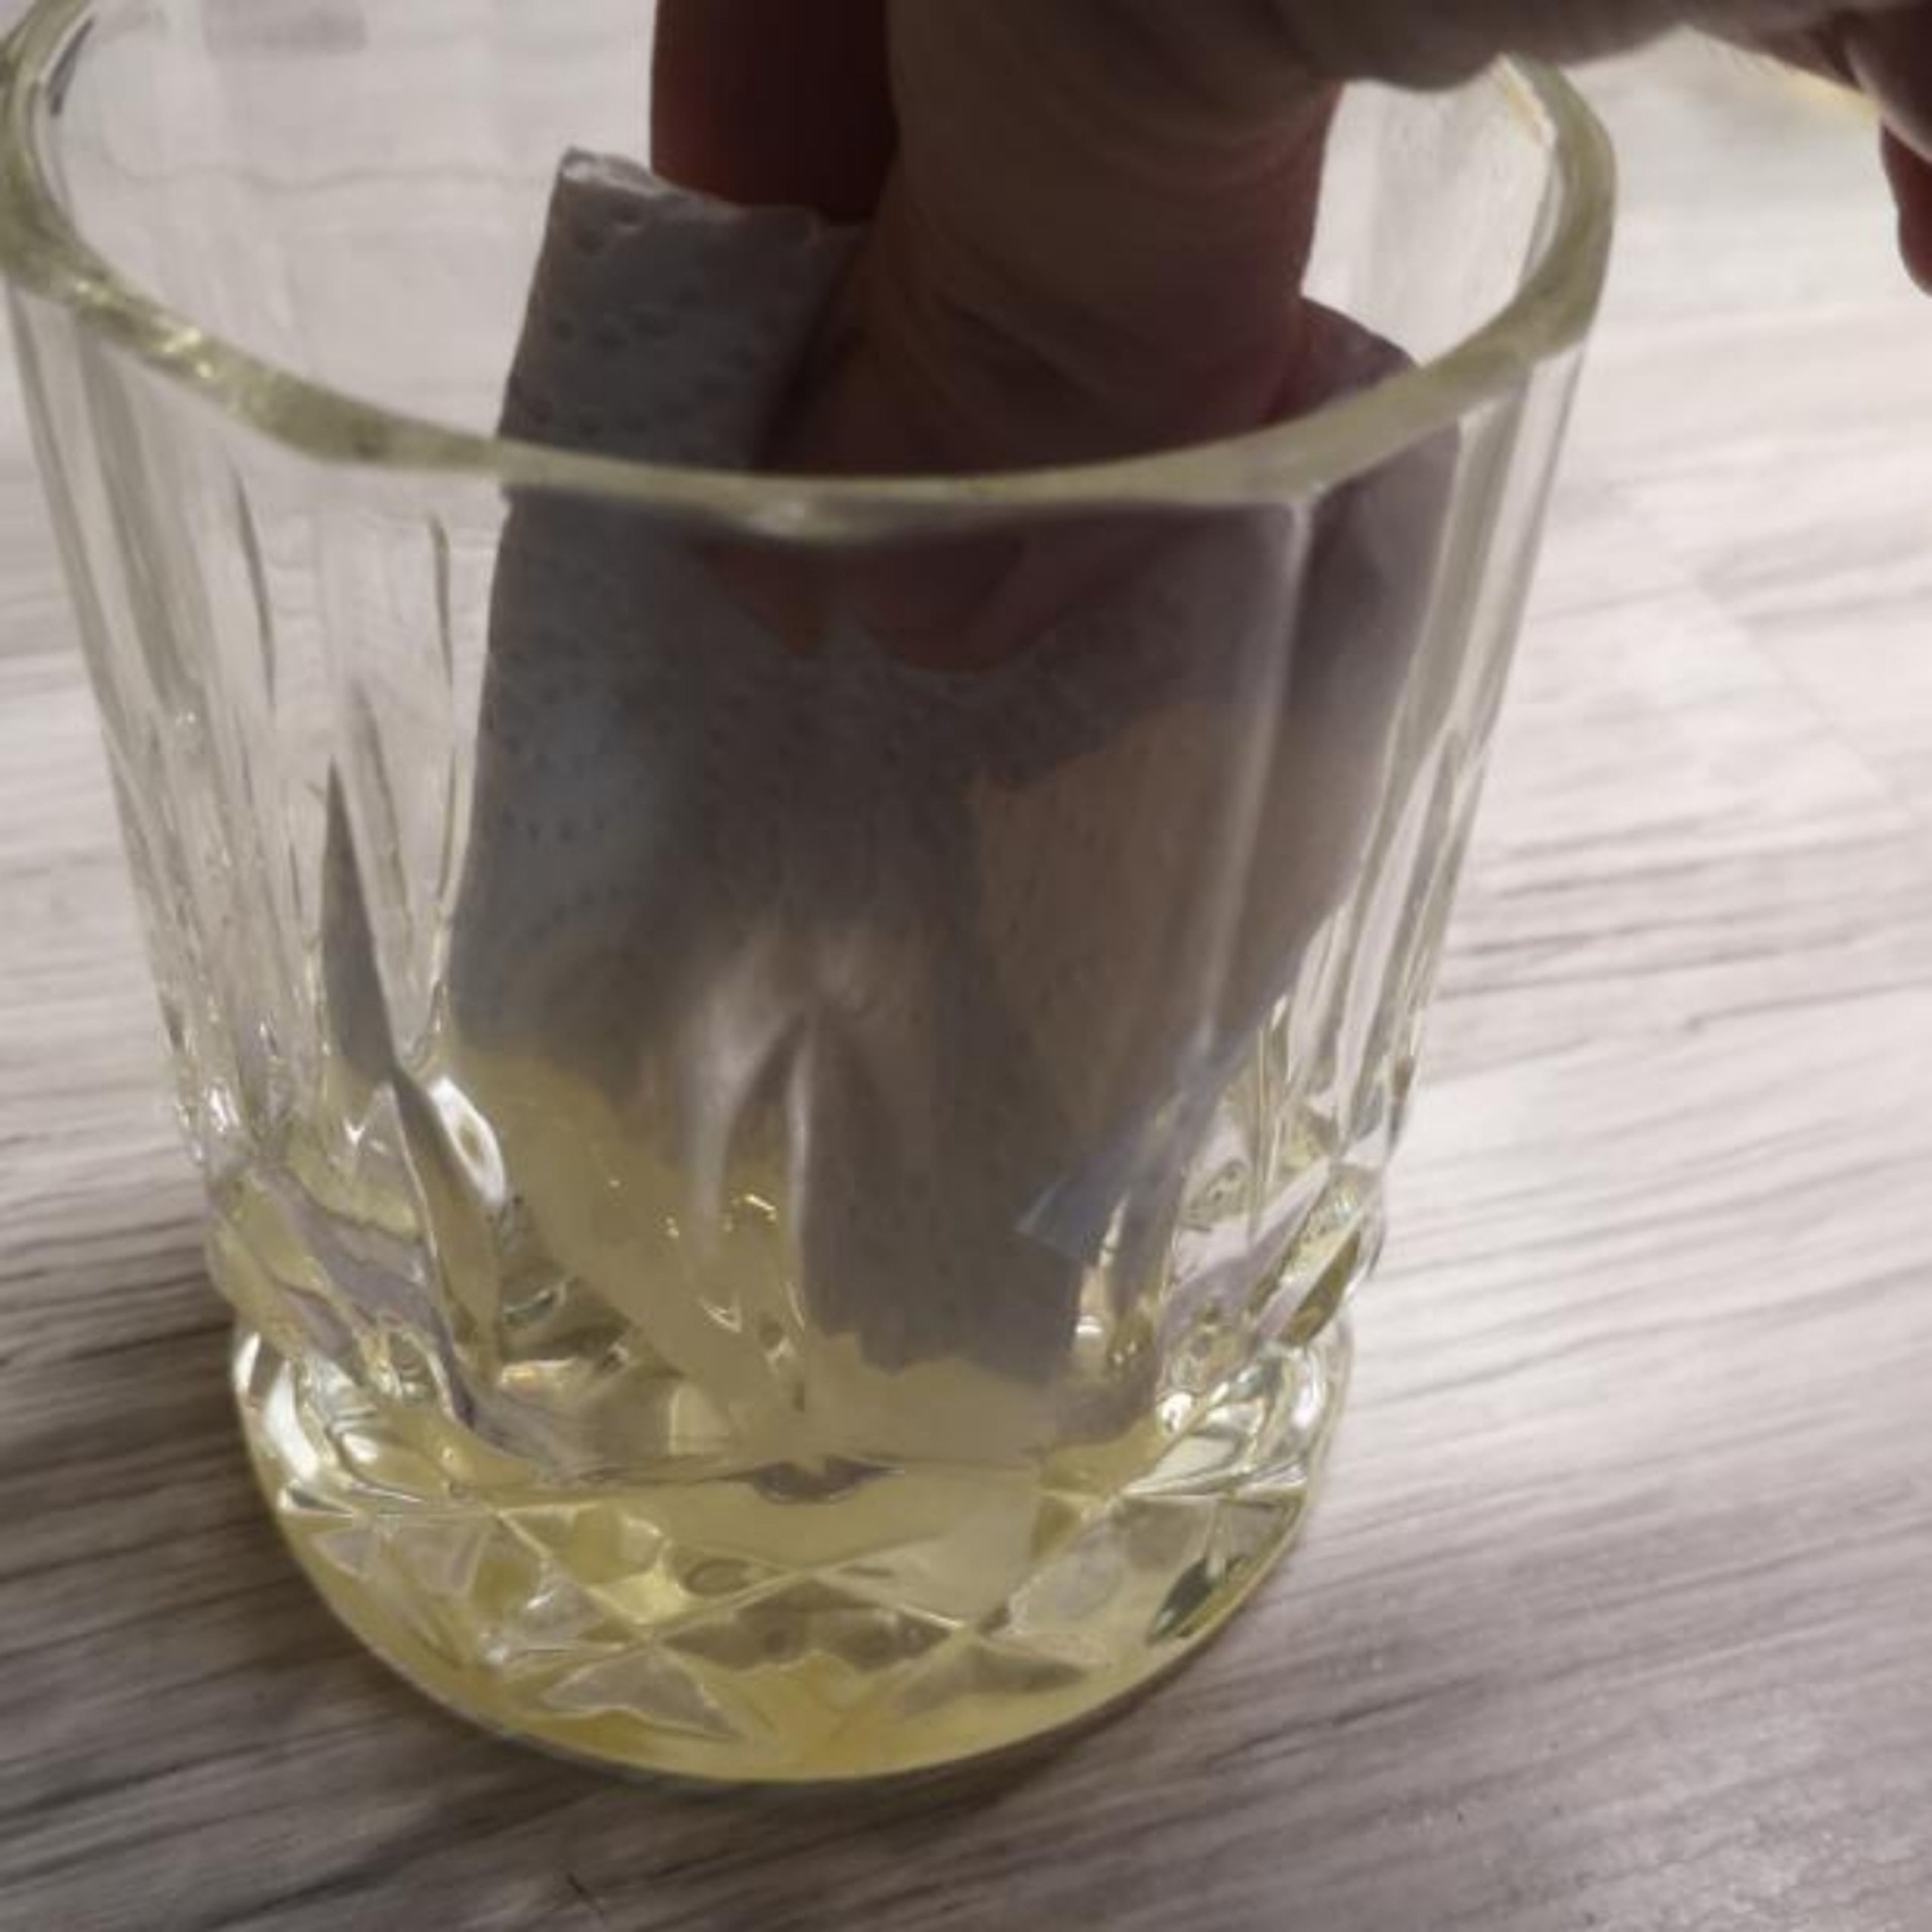 Etwas Öl in ein kleines Glas füllen, ein Blatt Küchenpapier zusammen falten und etwas in das Öl tunken.